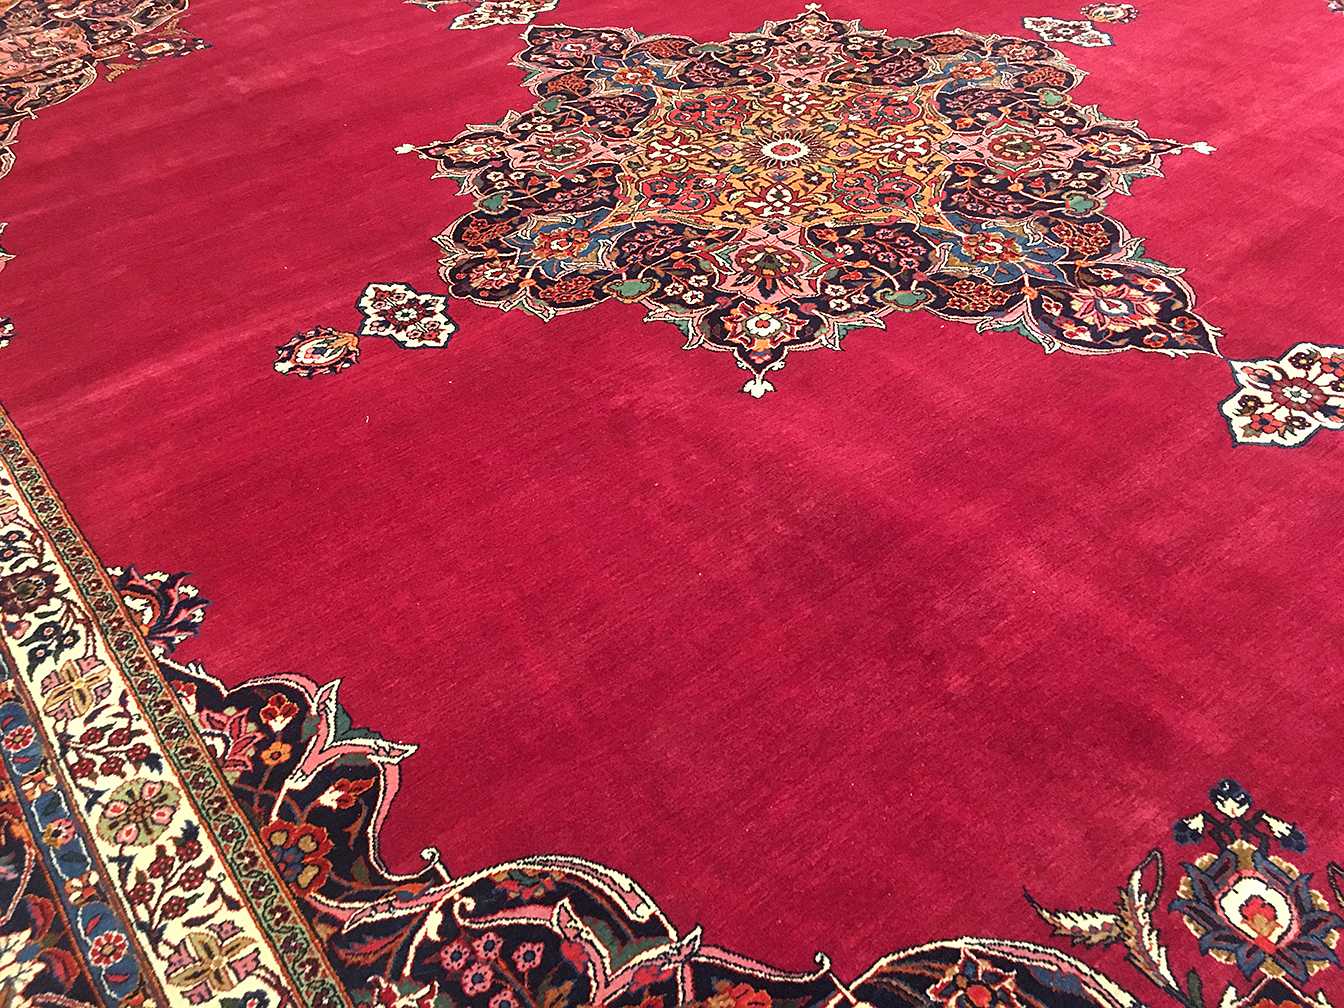 Vintage kashan Carpet - # 53138